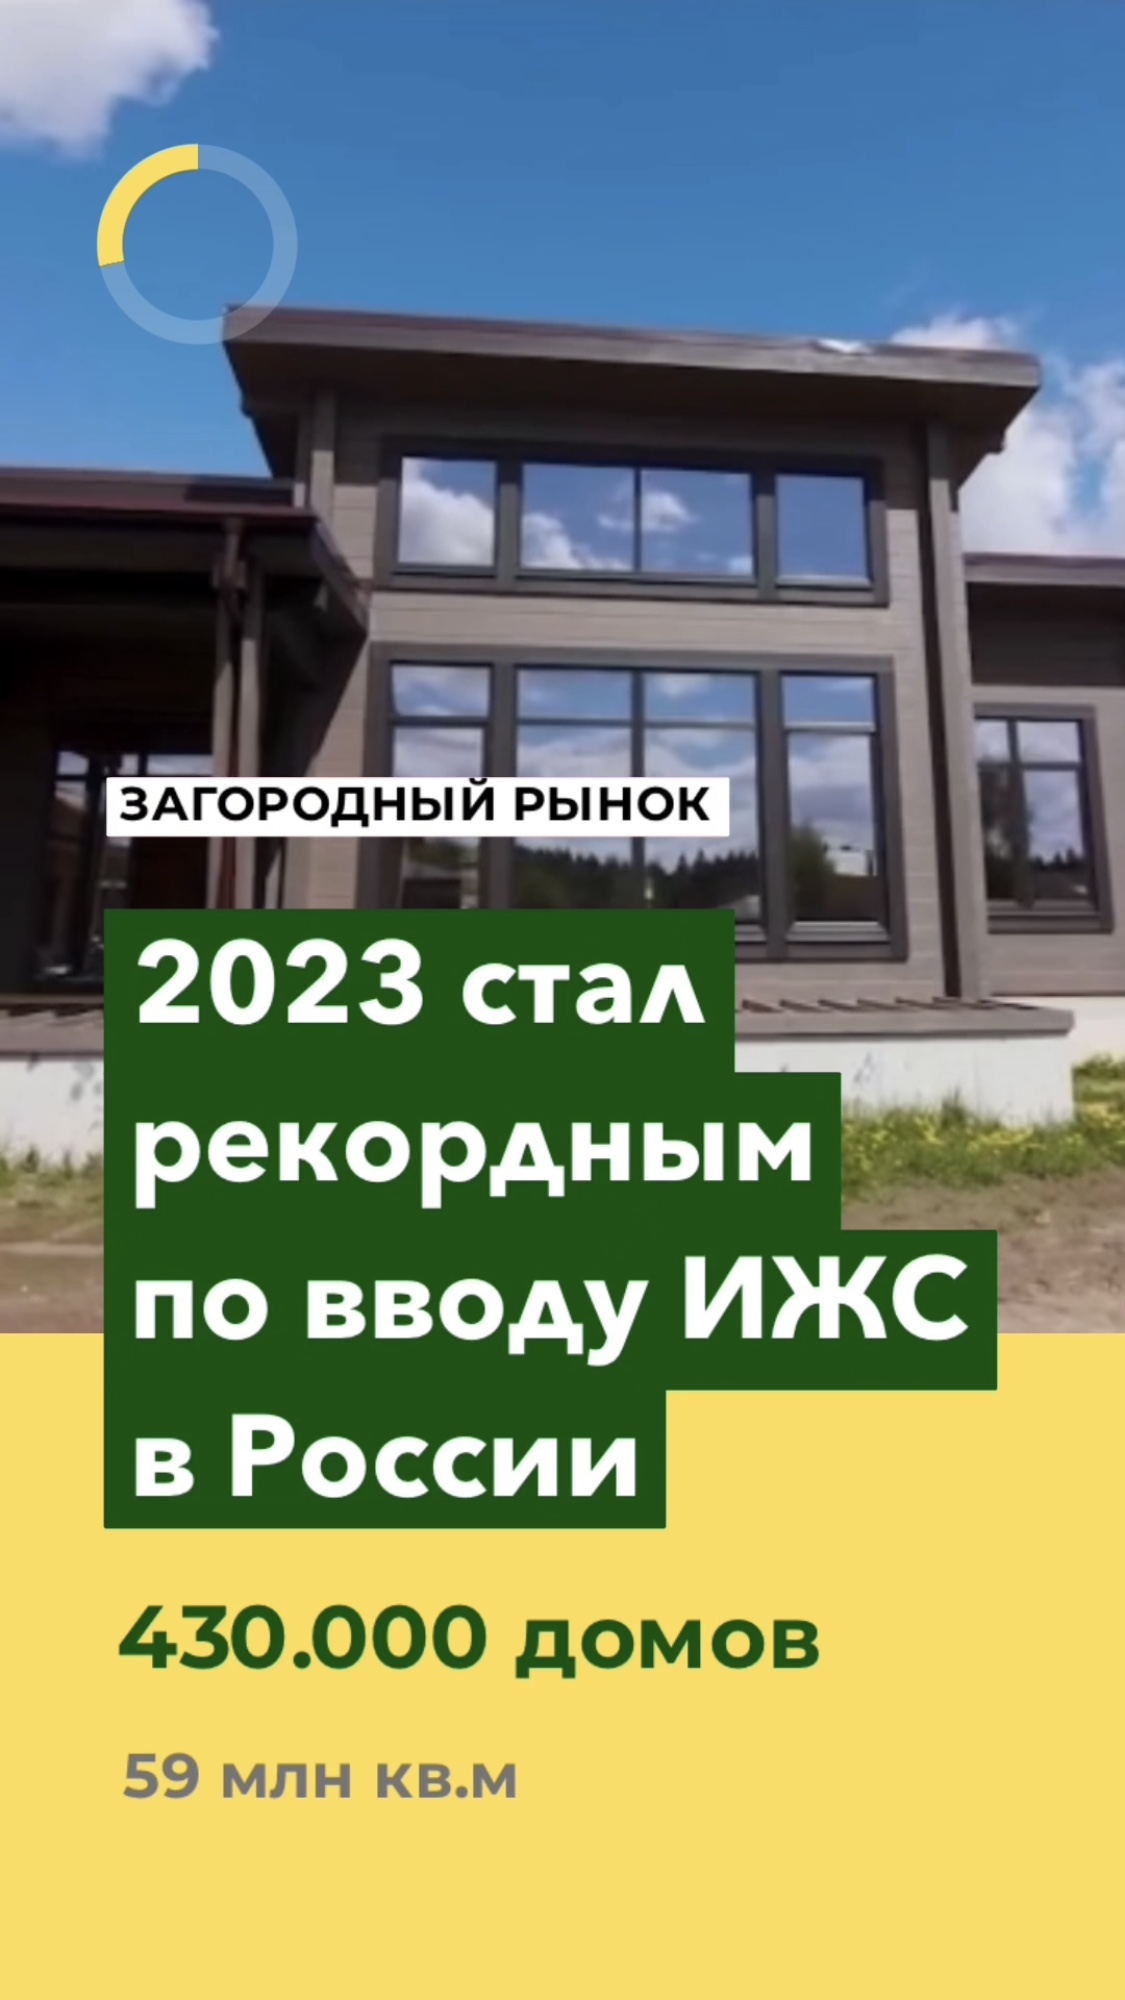 РОССИЯ 🏡 Становится одноэтажной #недвижимость #дом #ижс